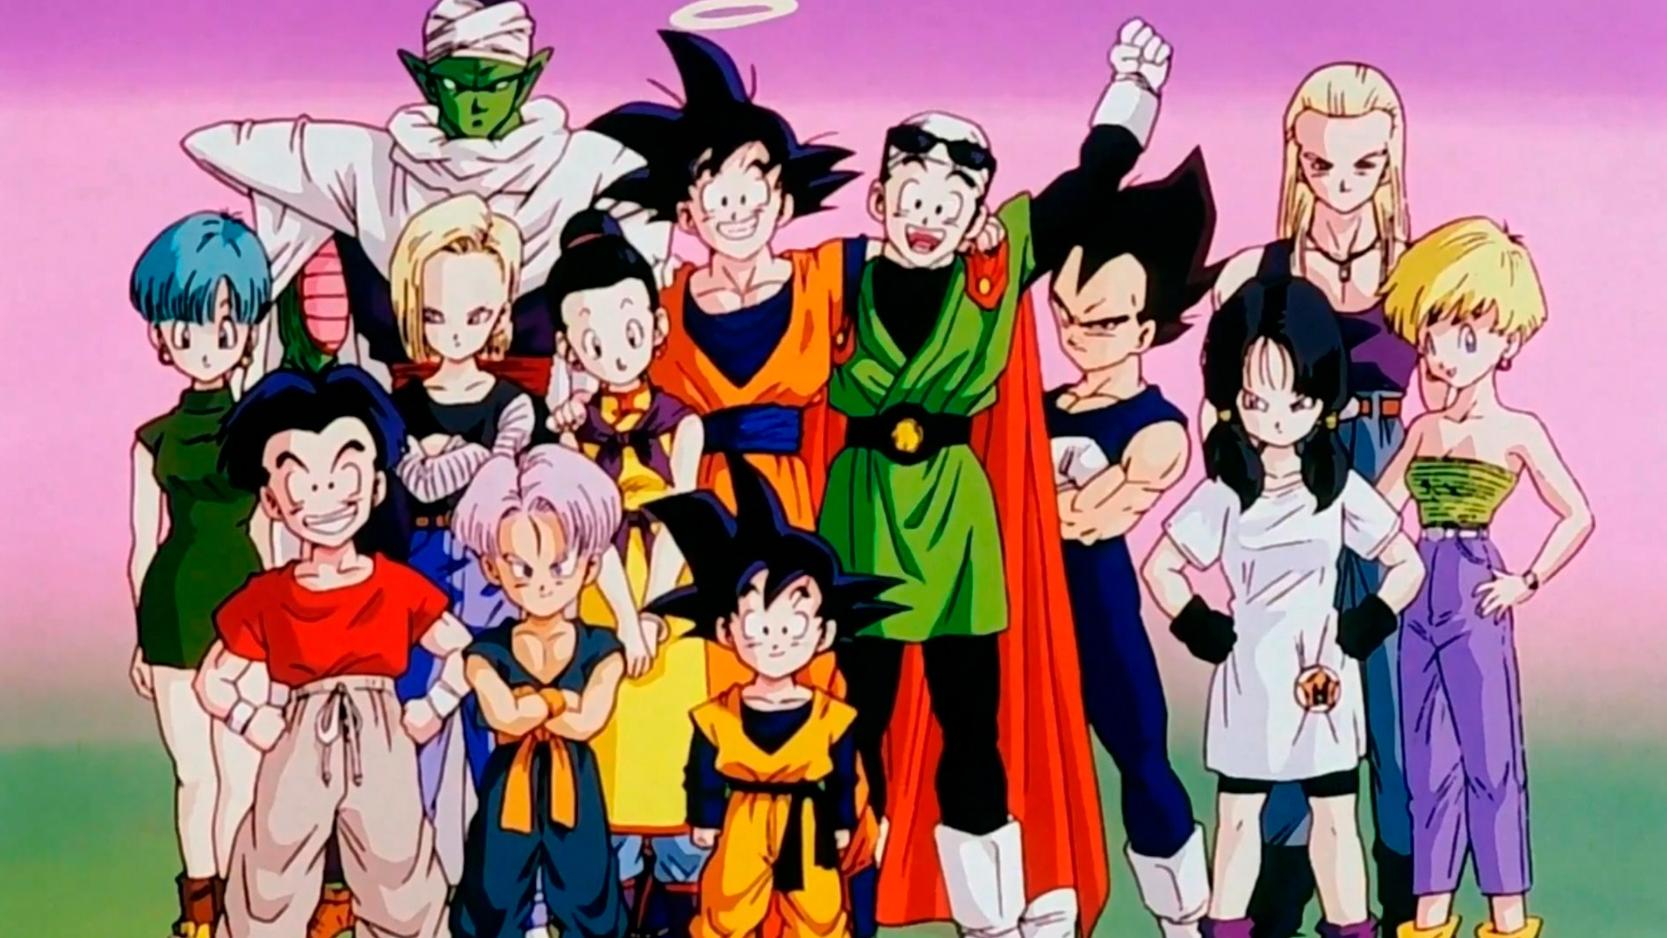 Globo surpreende fãs e Goku vai parar no Globoplay, diz jornalista